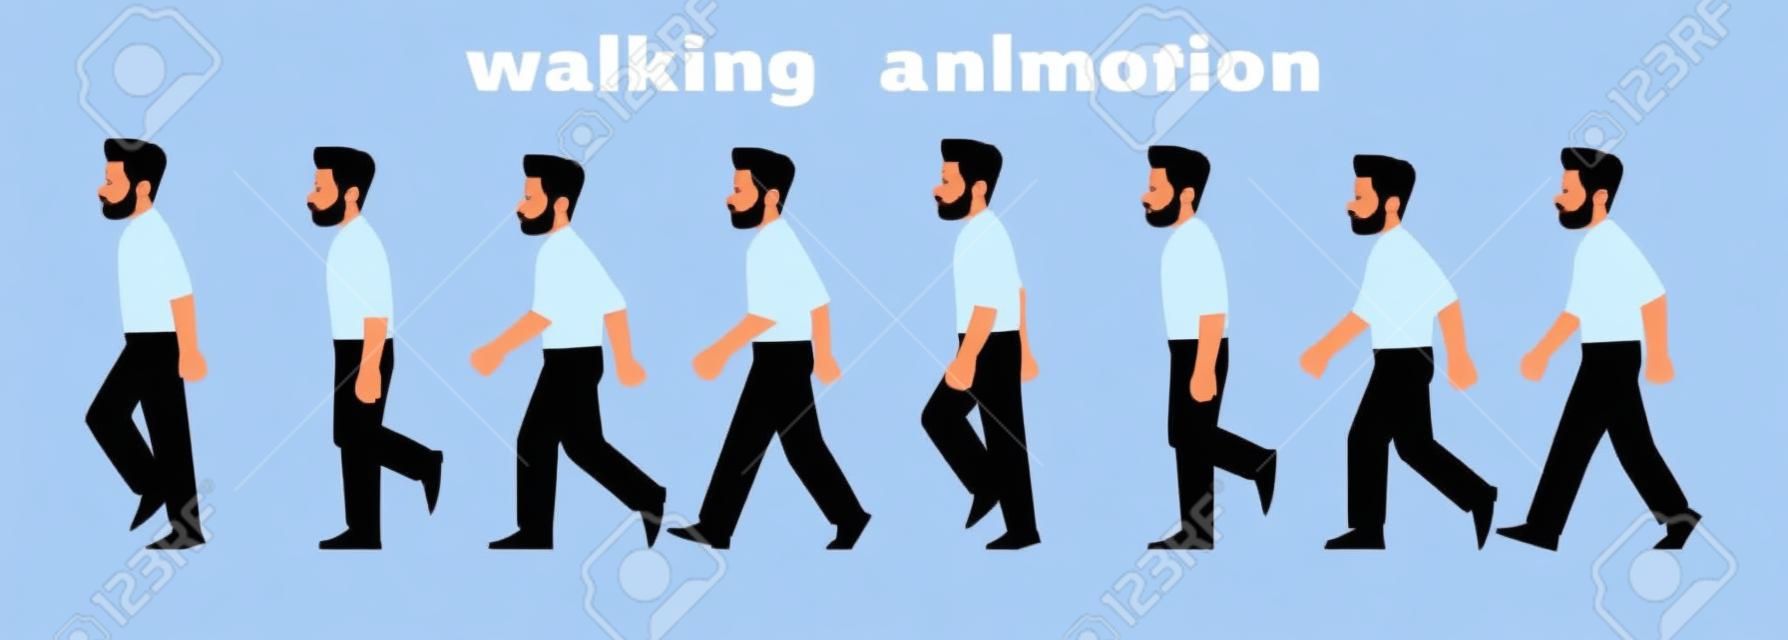 Man karakter wandelen animatie. Zakenman wandelt, een stap voor stap cyclus van foto's. Vector illustratie in cartoon stijl